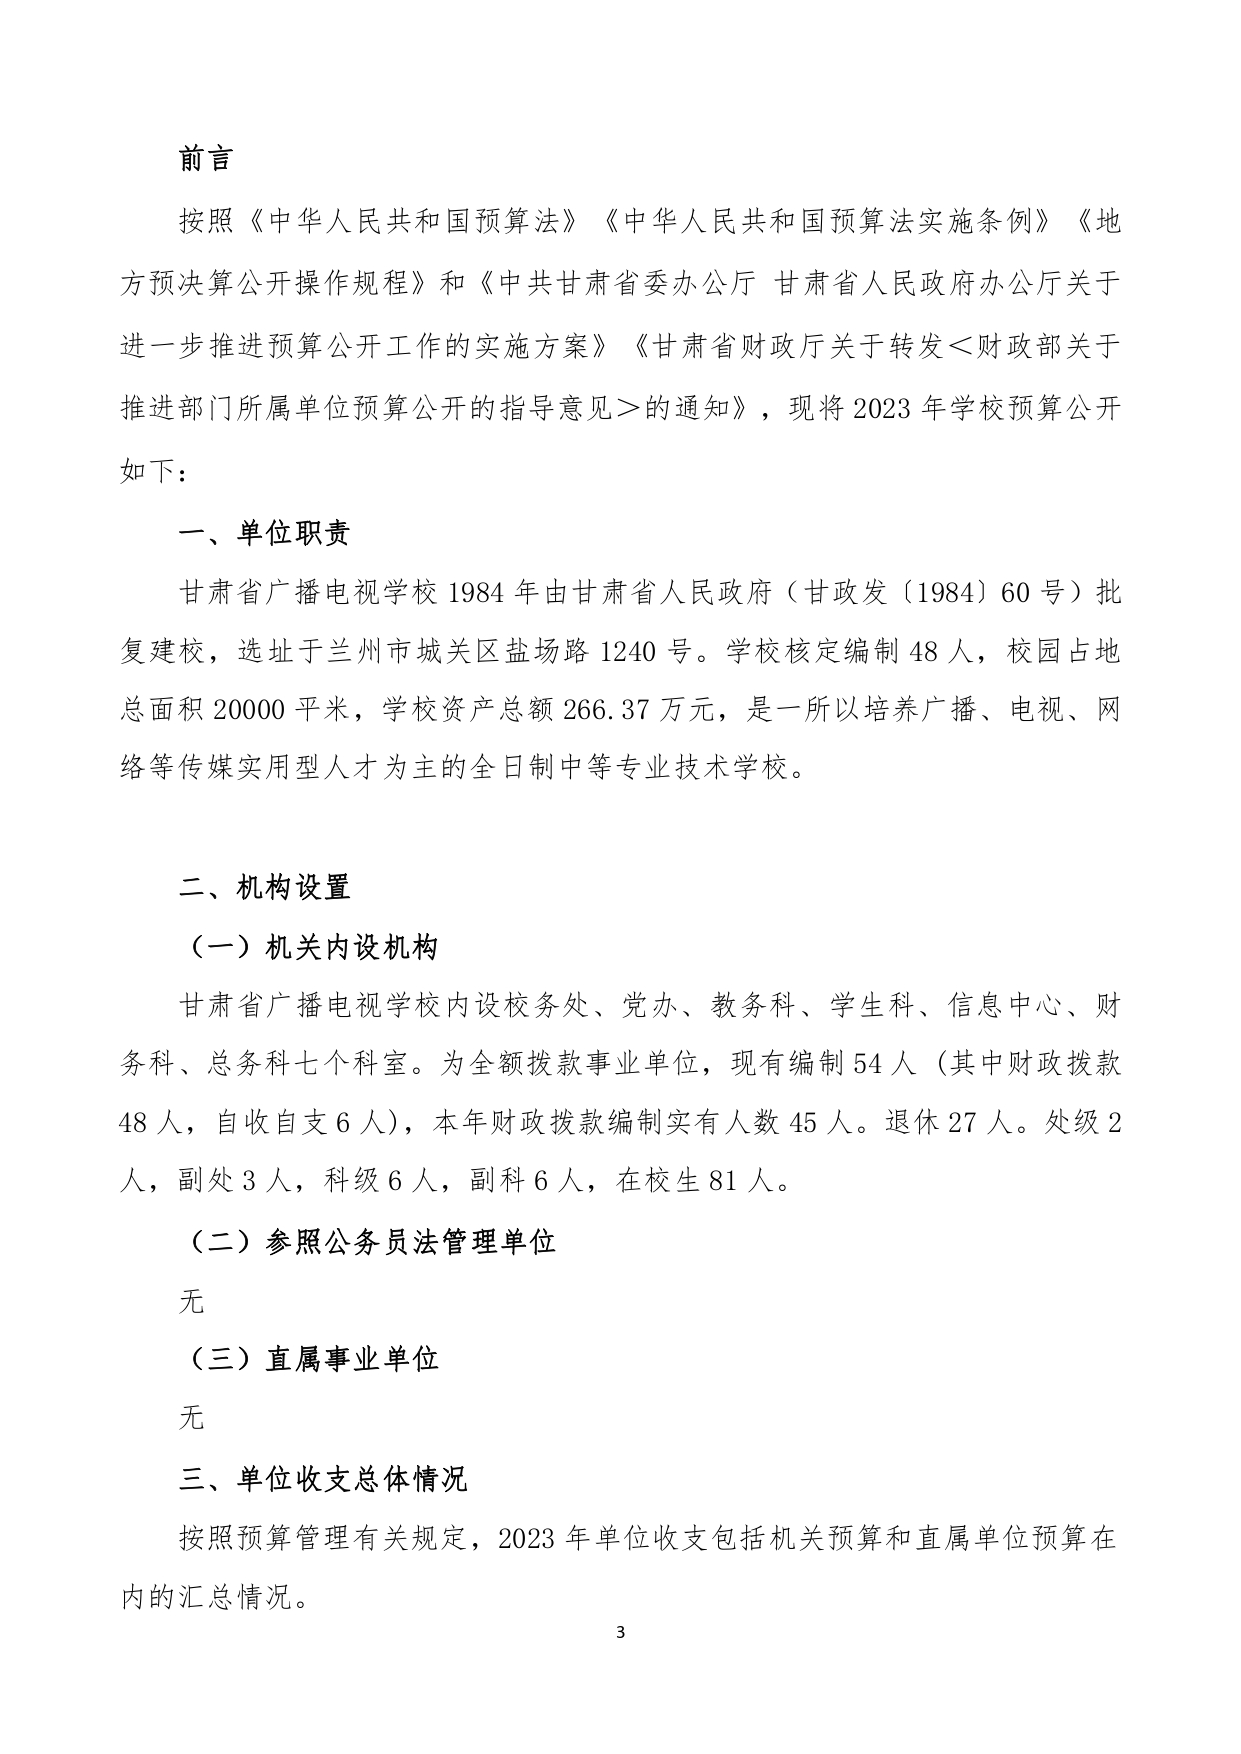 甘肃省广播电视学校2023年单位预算公开报告_page-0004.jpg